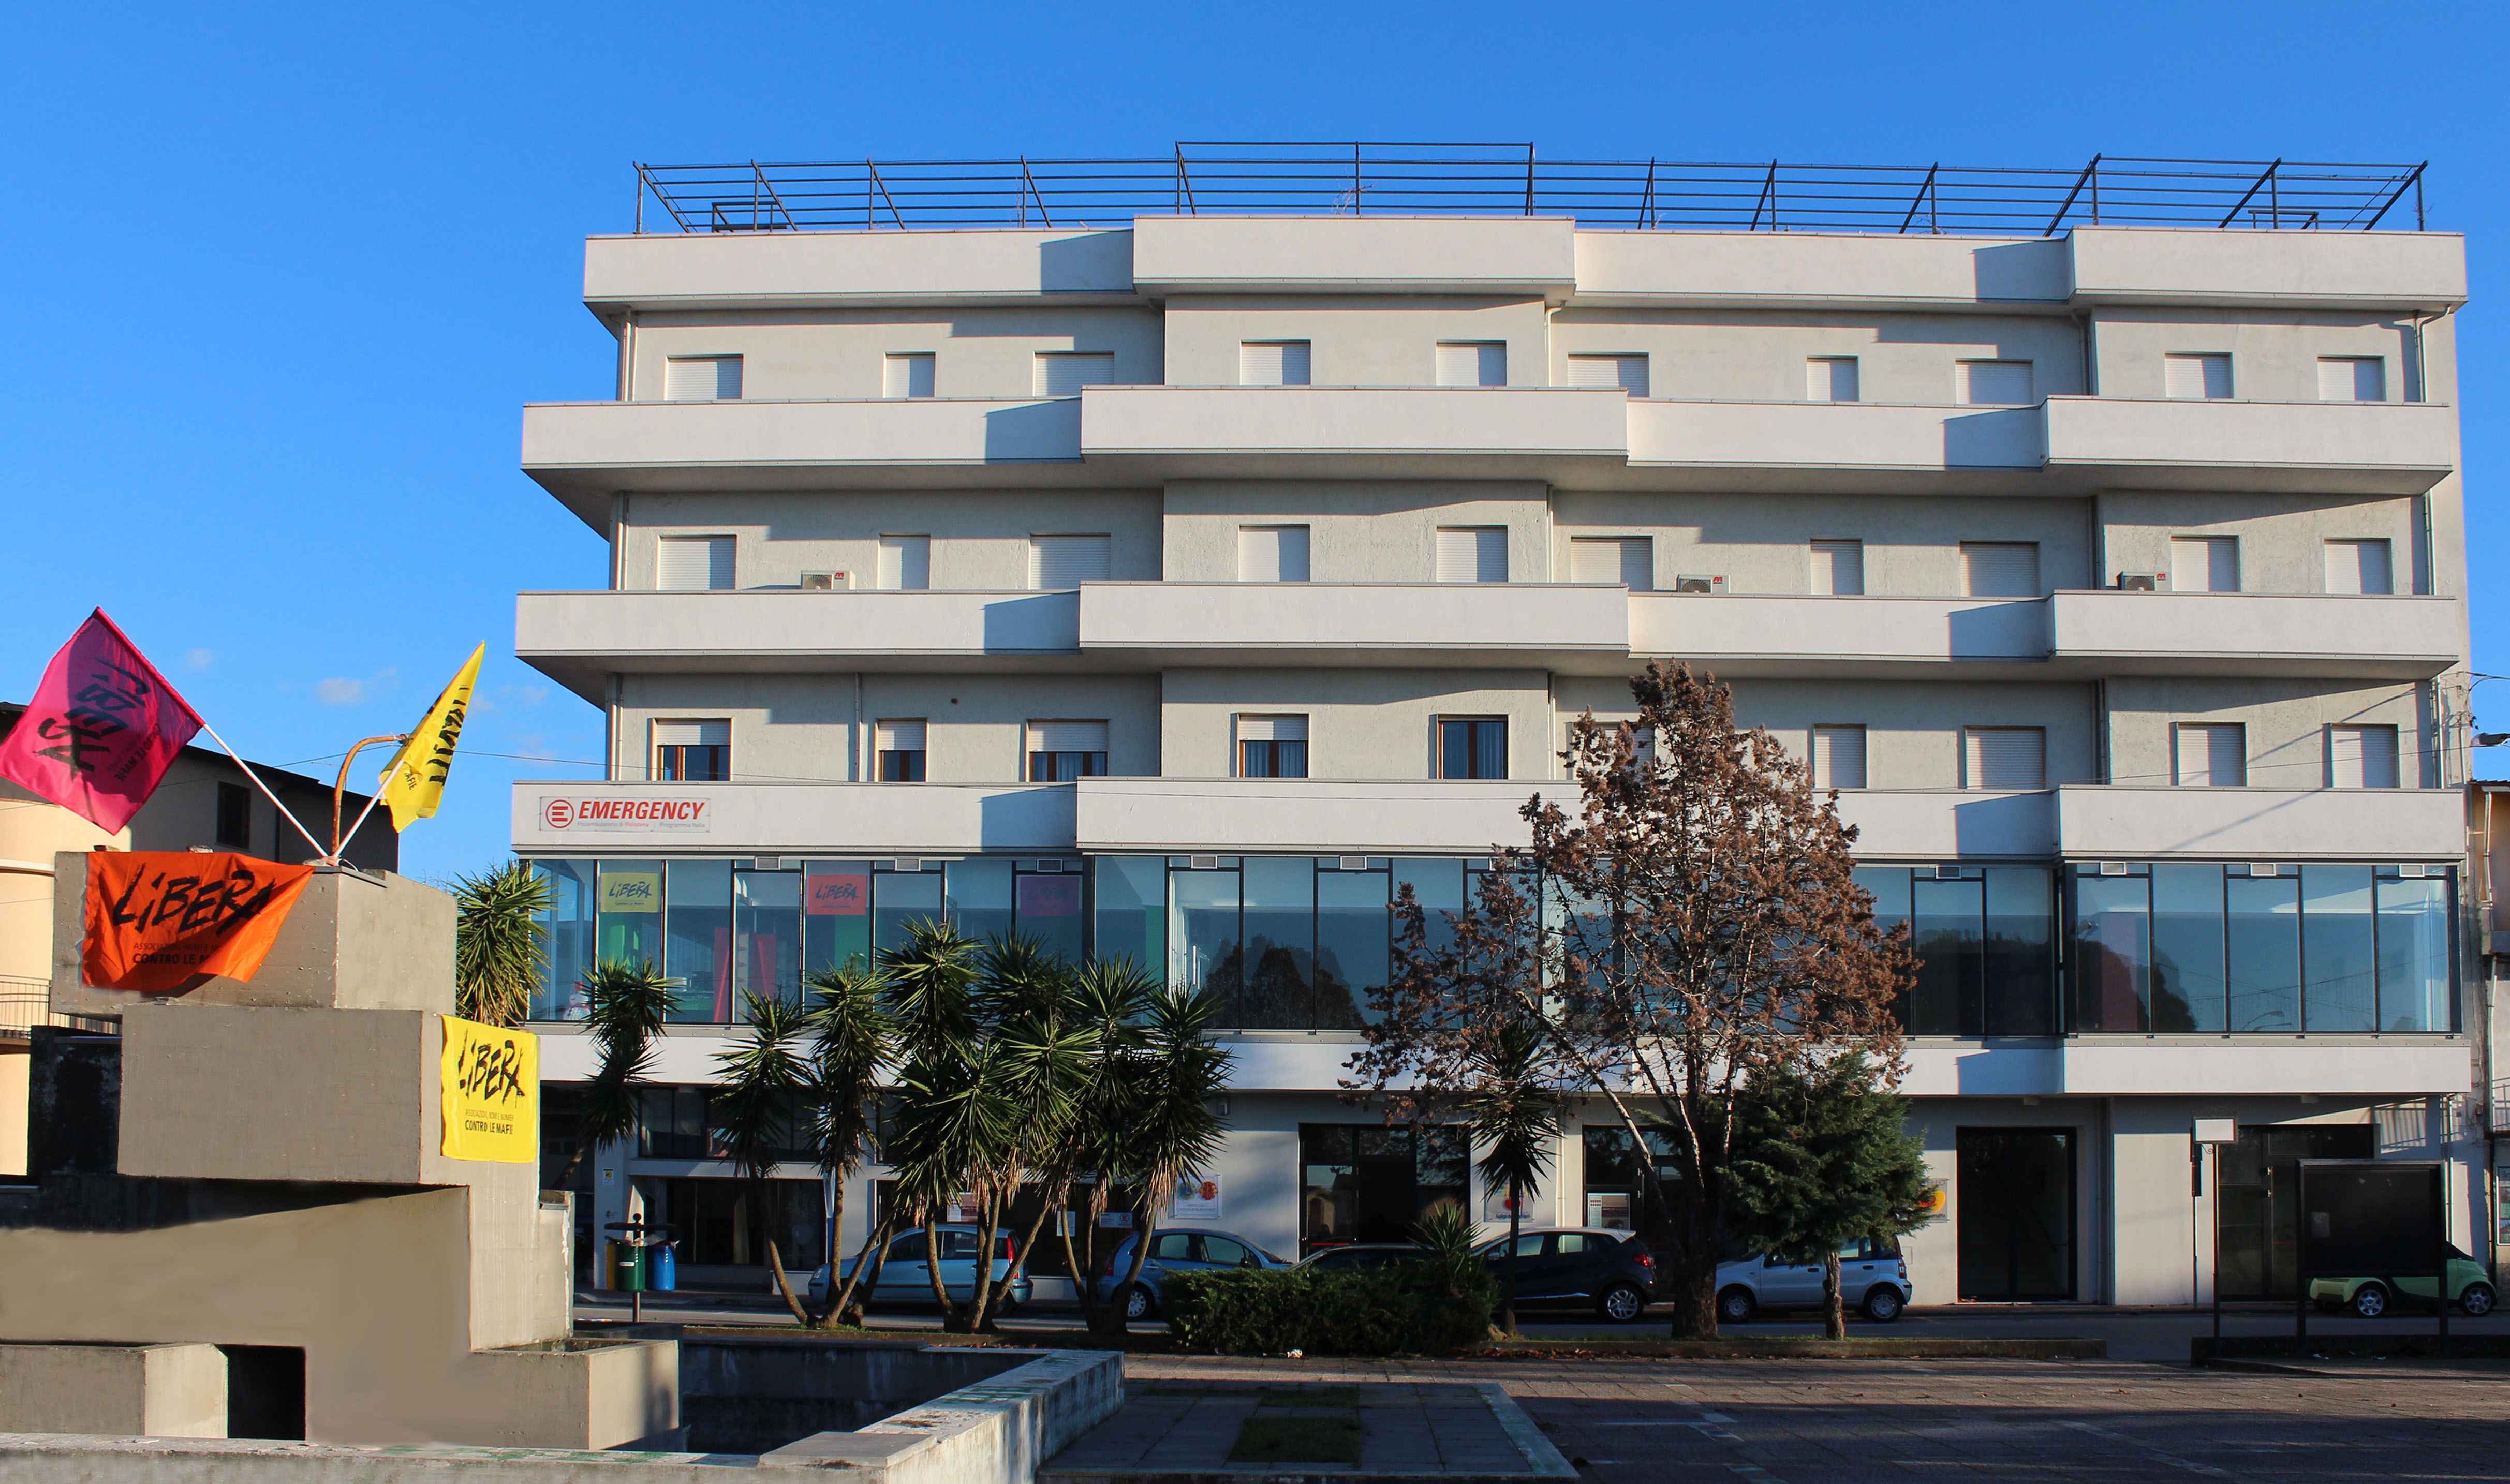 Centro polifunzionale Padre Pino puglisi, Palazzo confiscato alla 'ndrangheta a Polistena. Fonte: Valle del Marro